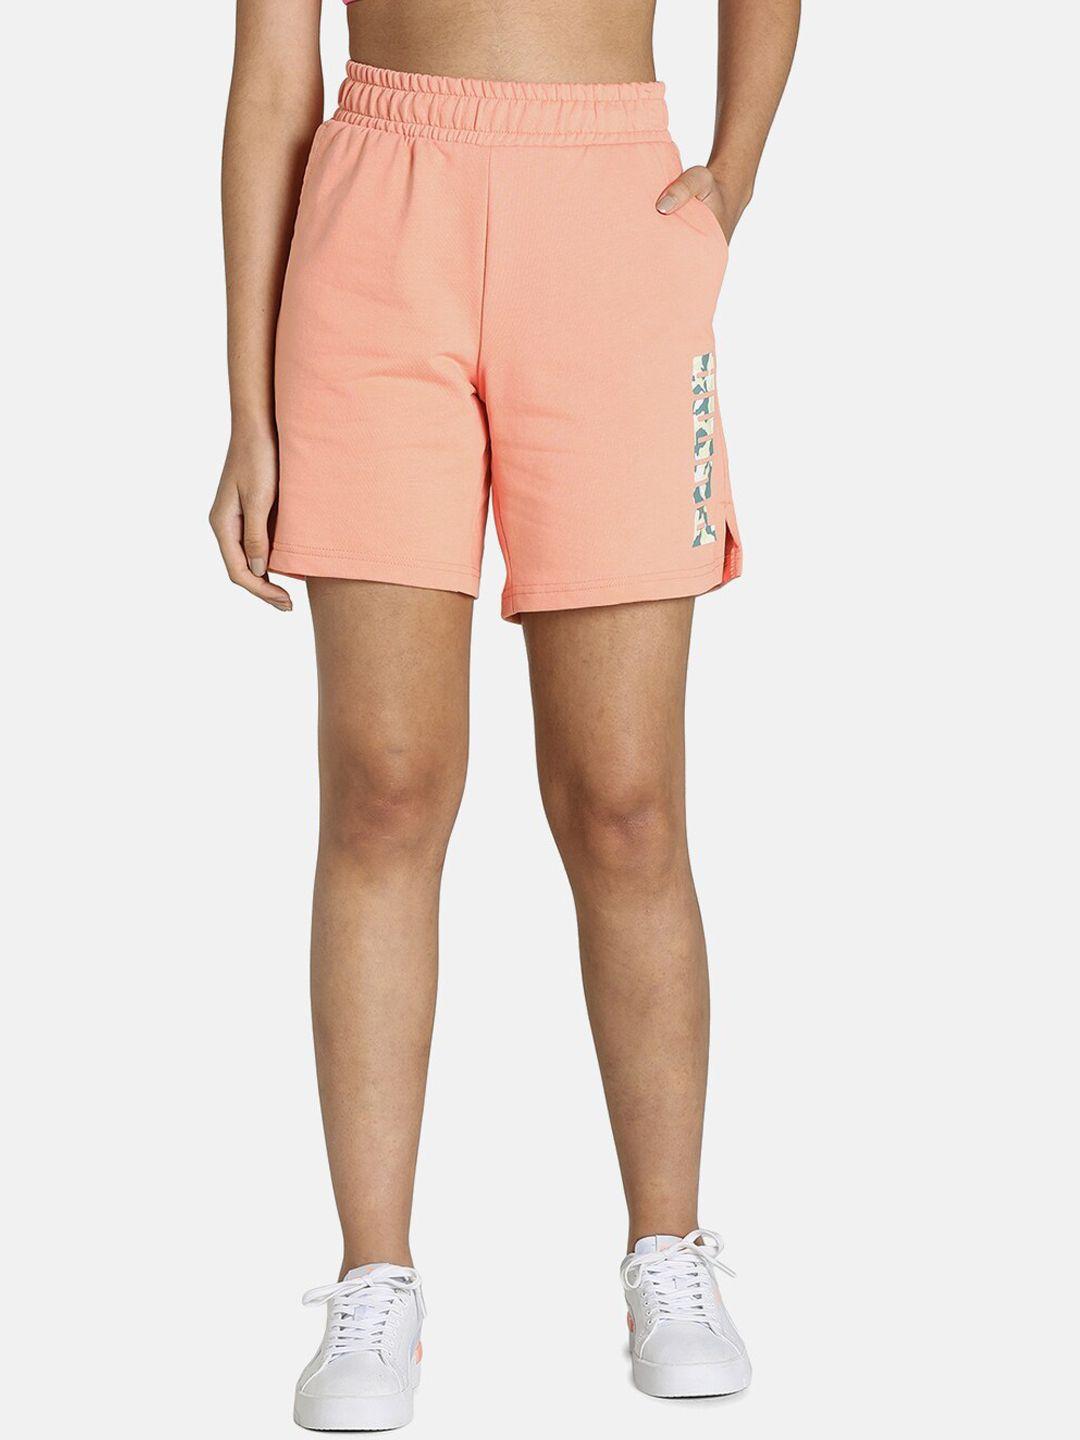 puma-women-peach-coloured-camo-graphic-logo-pure-cotton-shorts